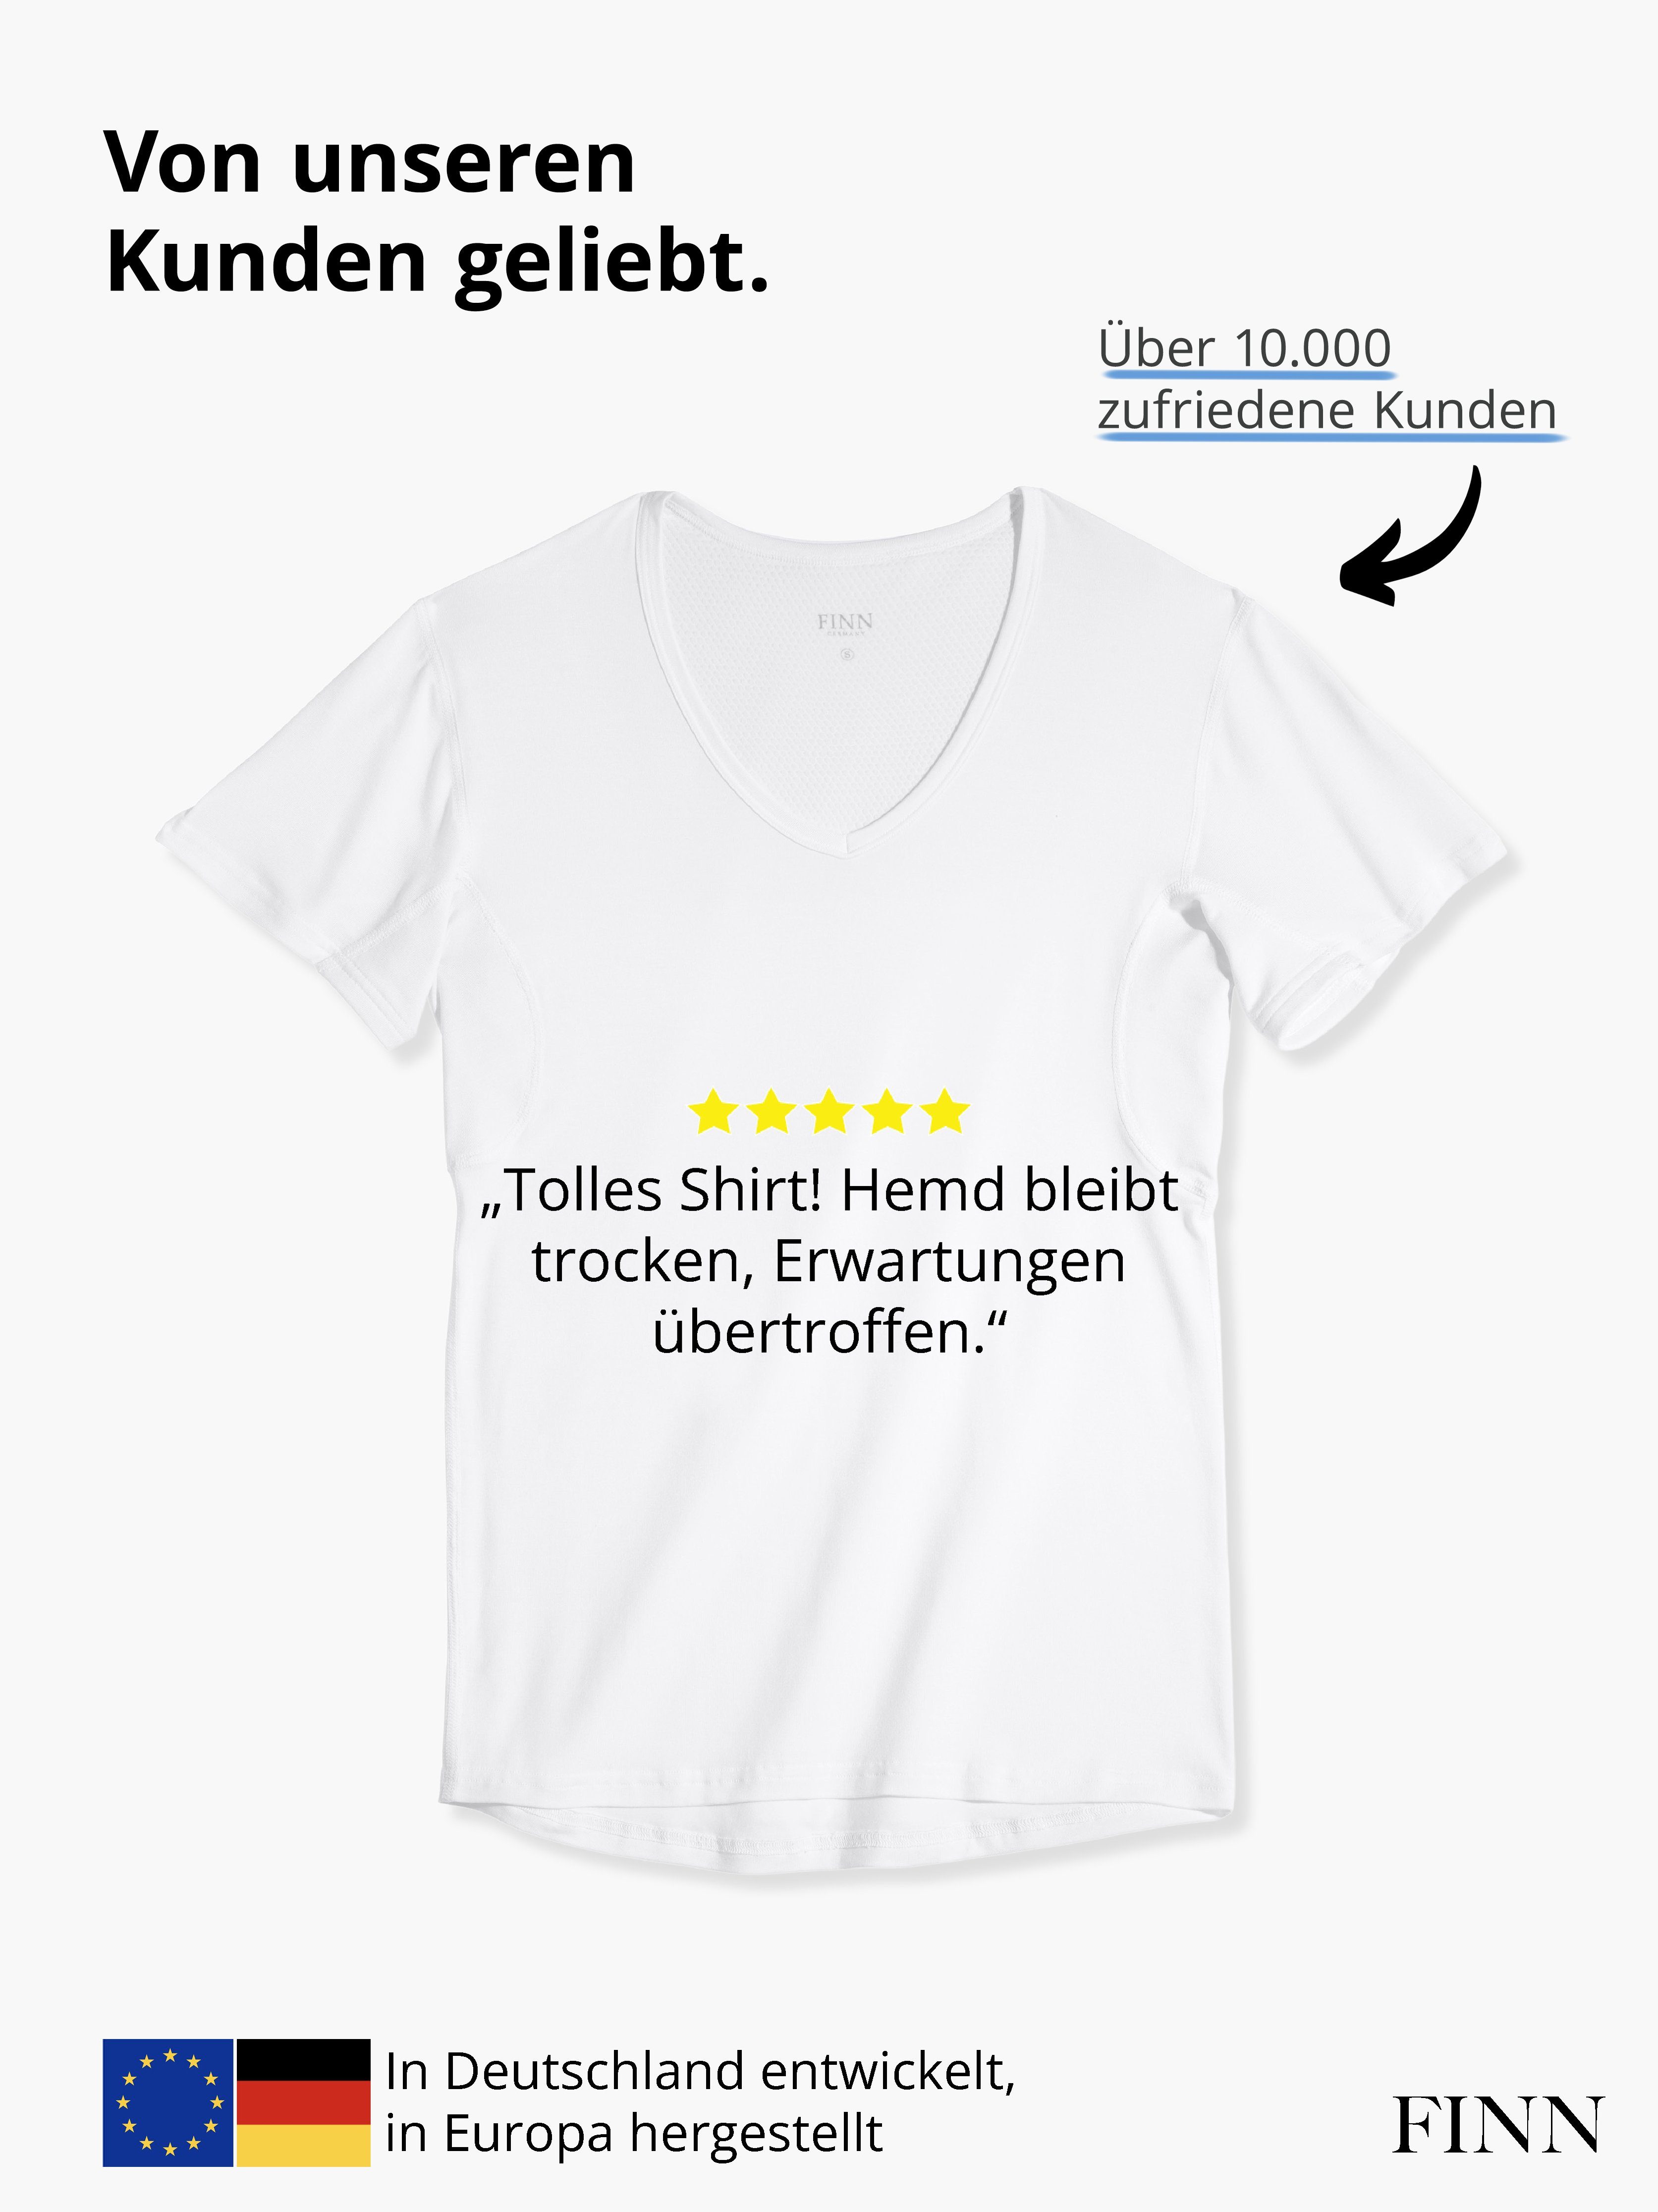 Design garantierte 100% Herren Unterhemd Schutz Wirkung vor Anti-Schweiß Unterhemd FINN Schweißflecken,